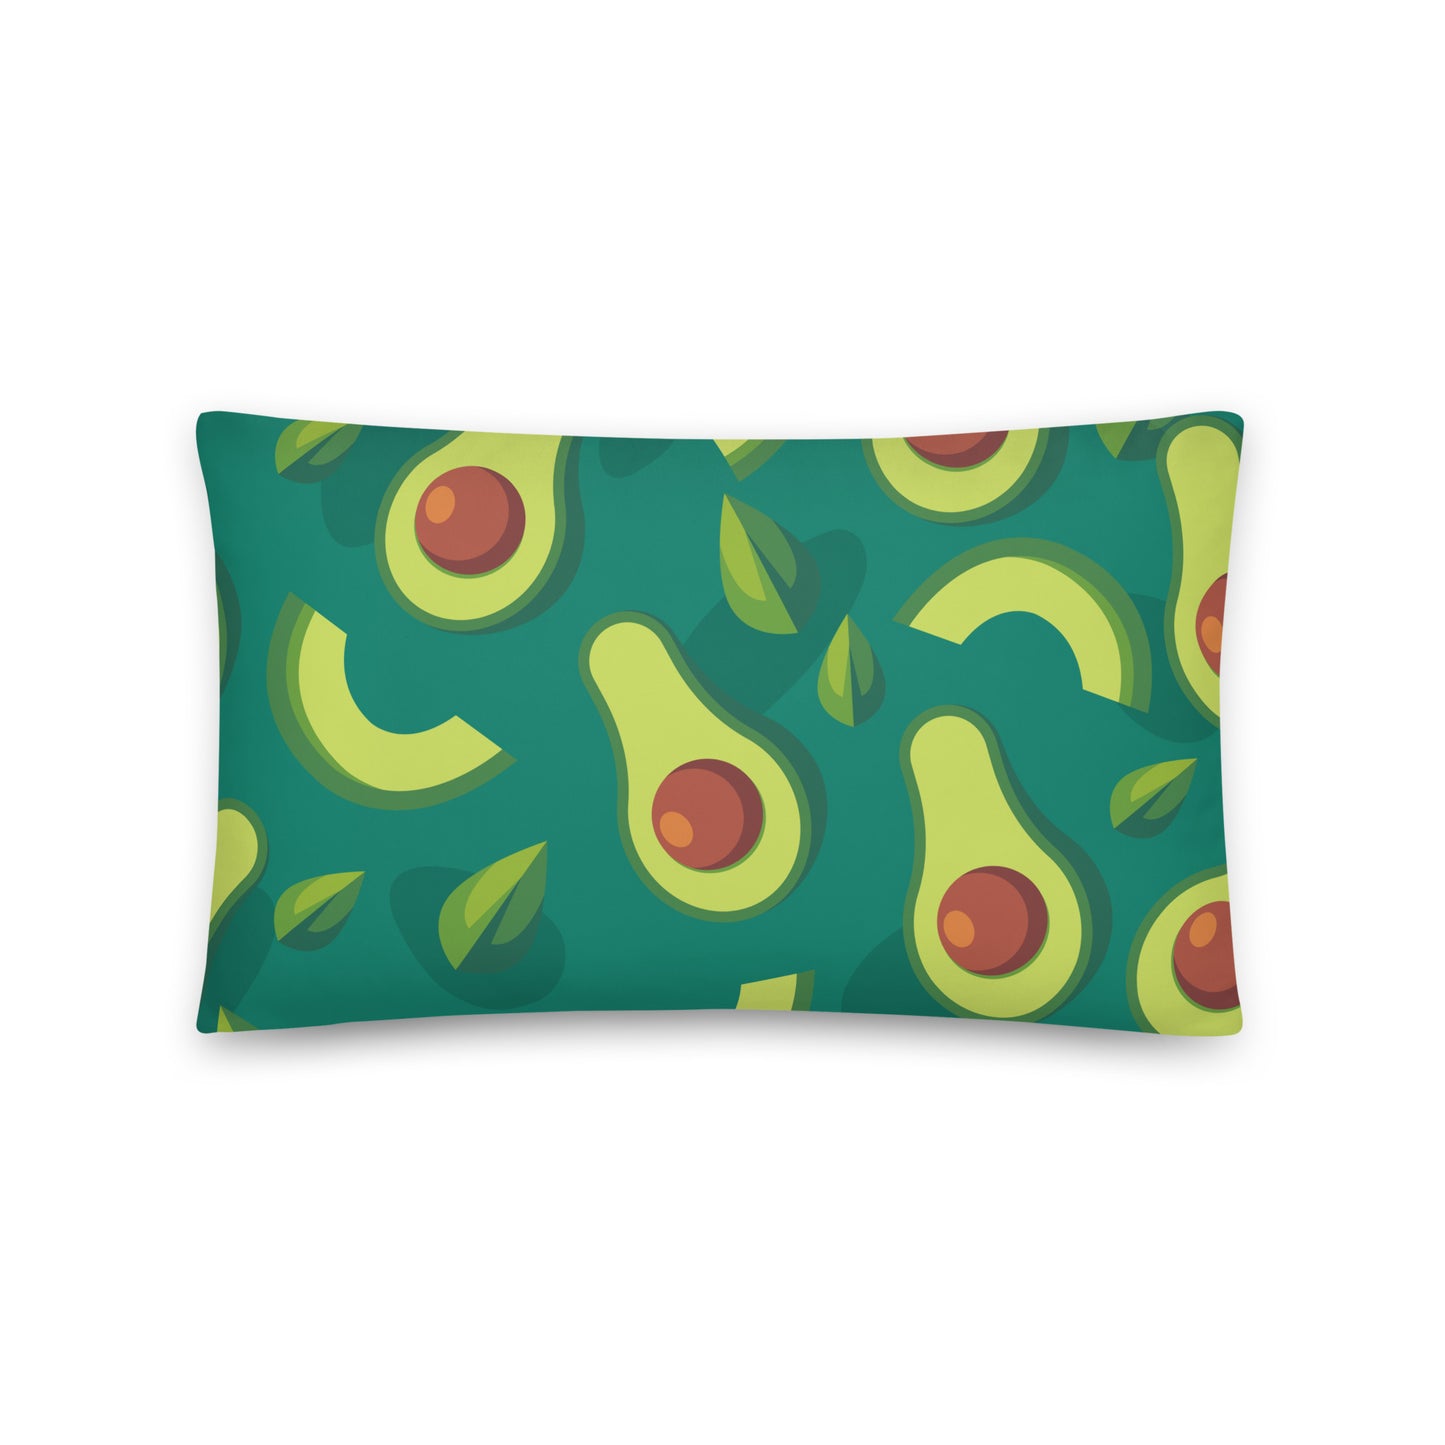 Avocado - Sustainably Made Pillows